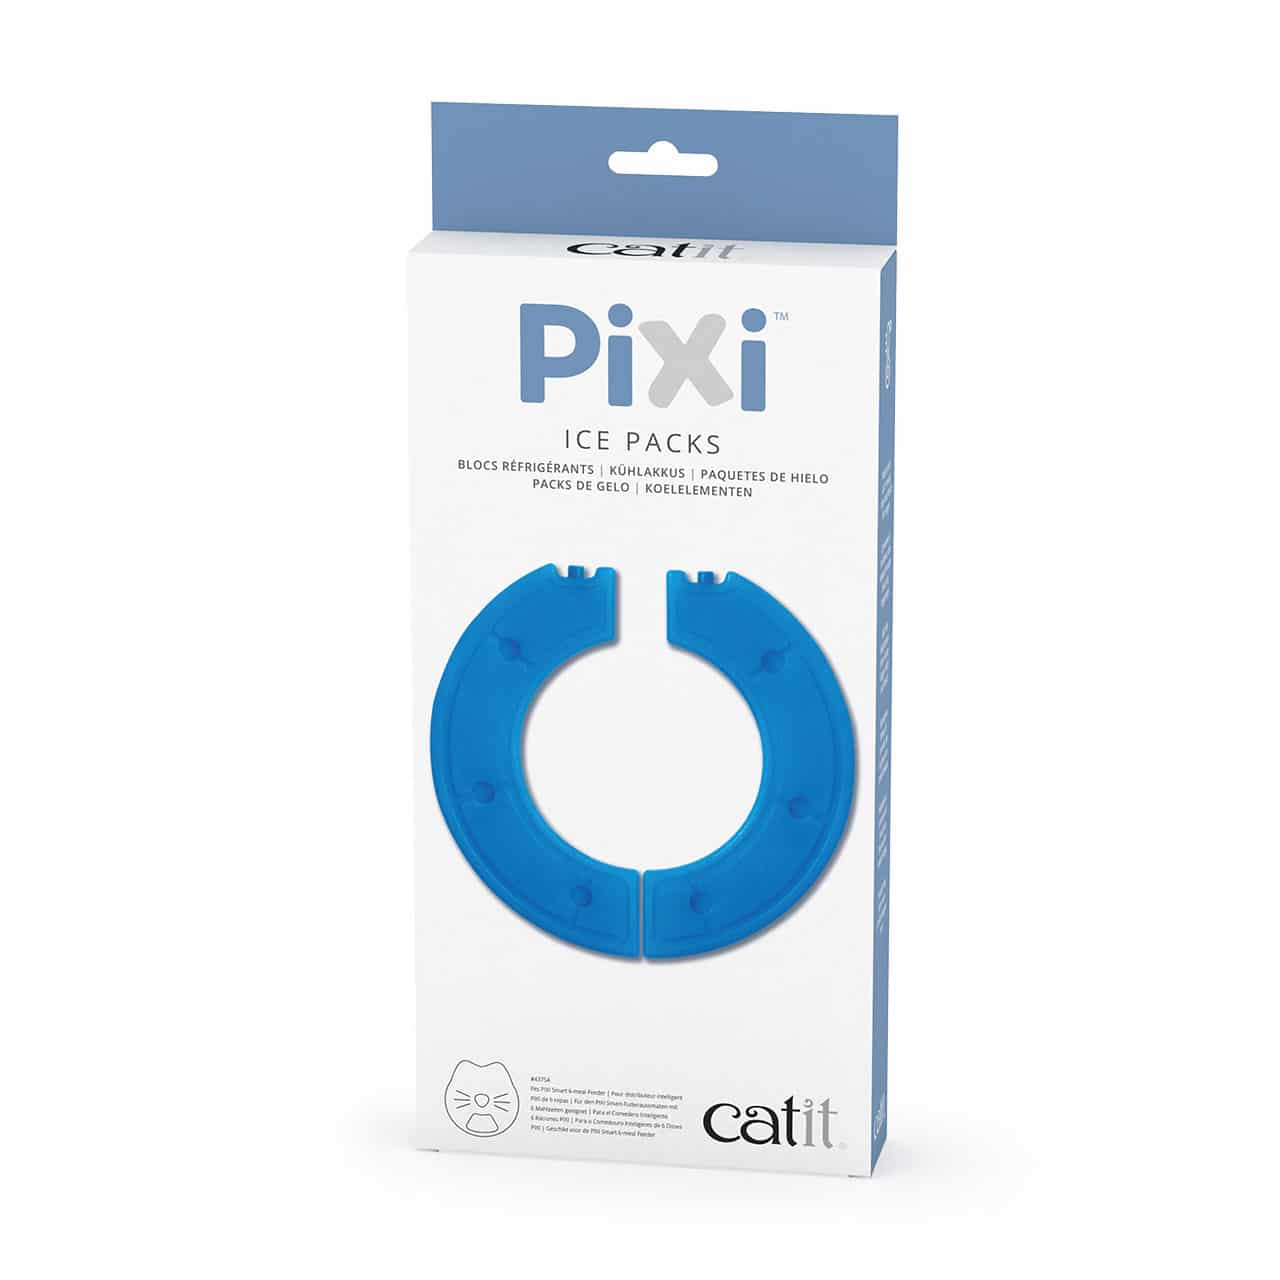 Packaging PIXI Ice Packs